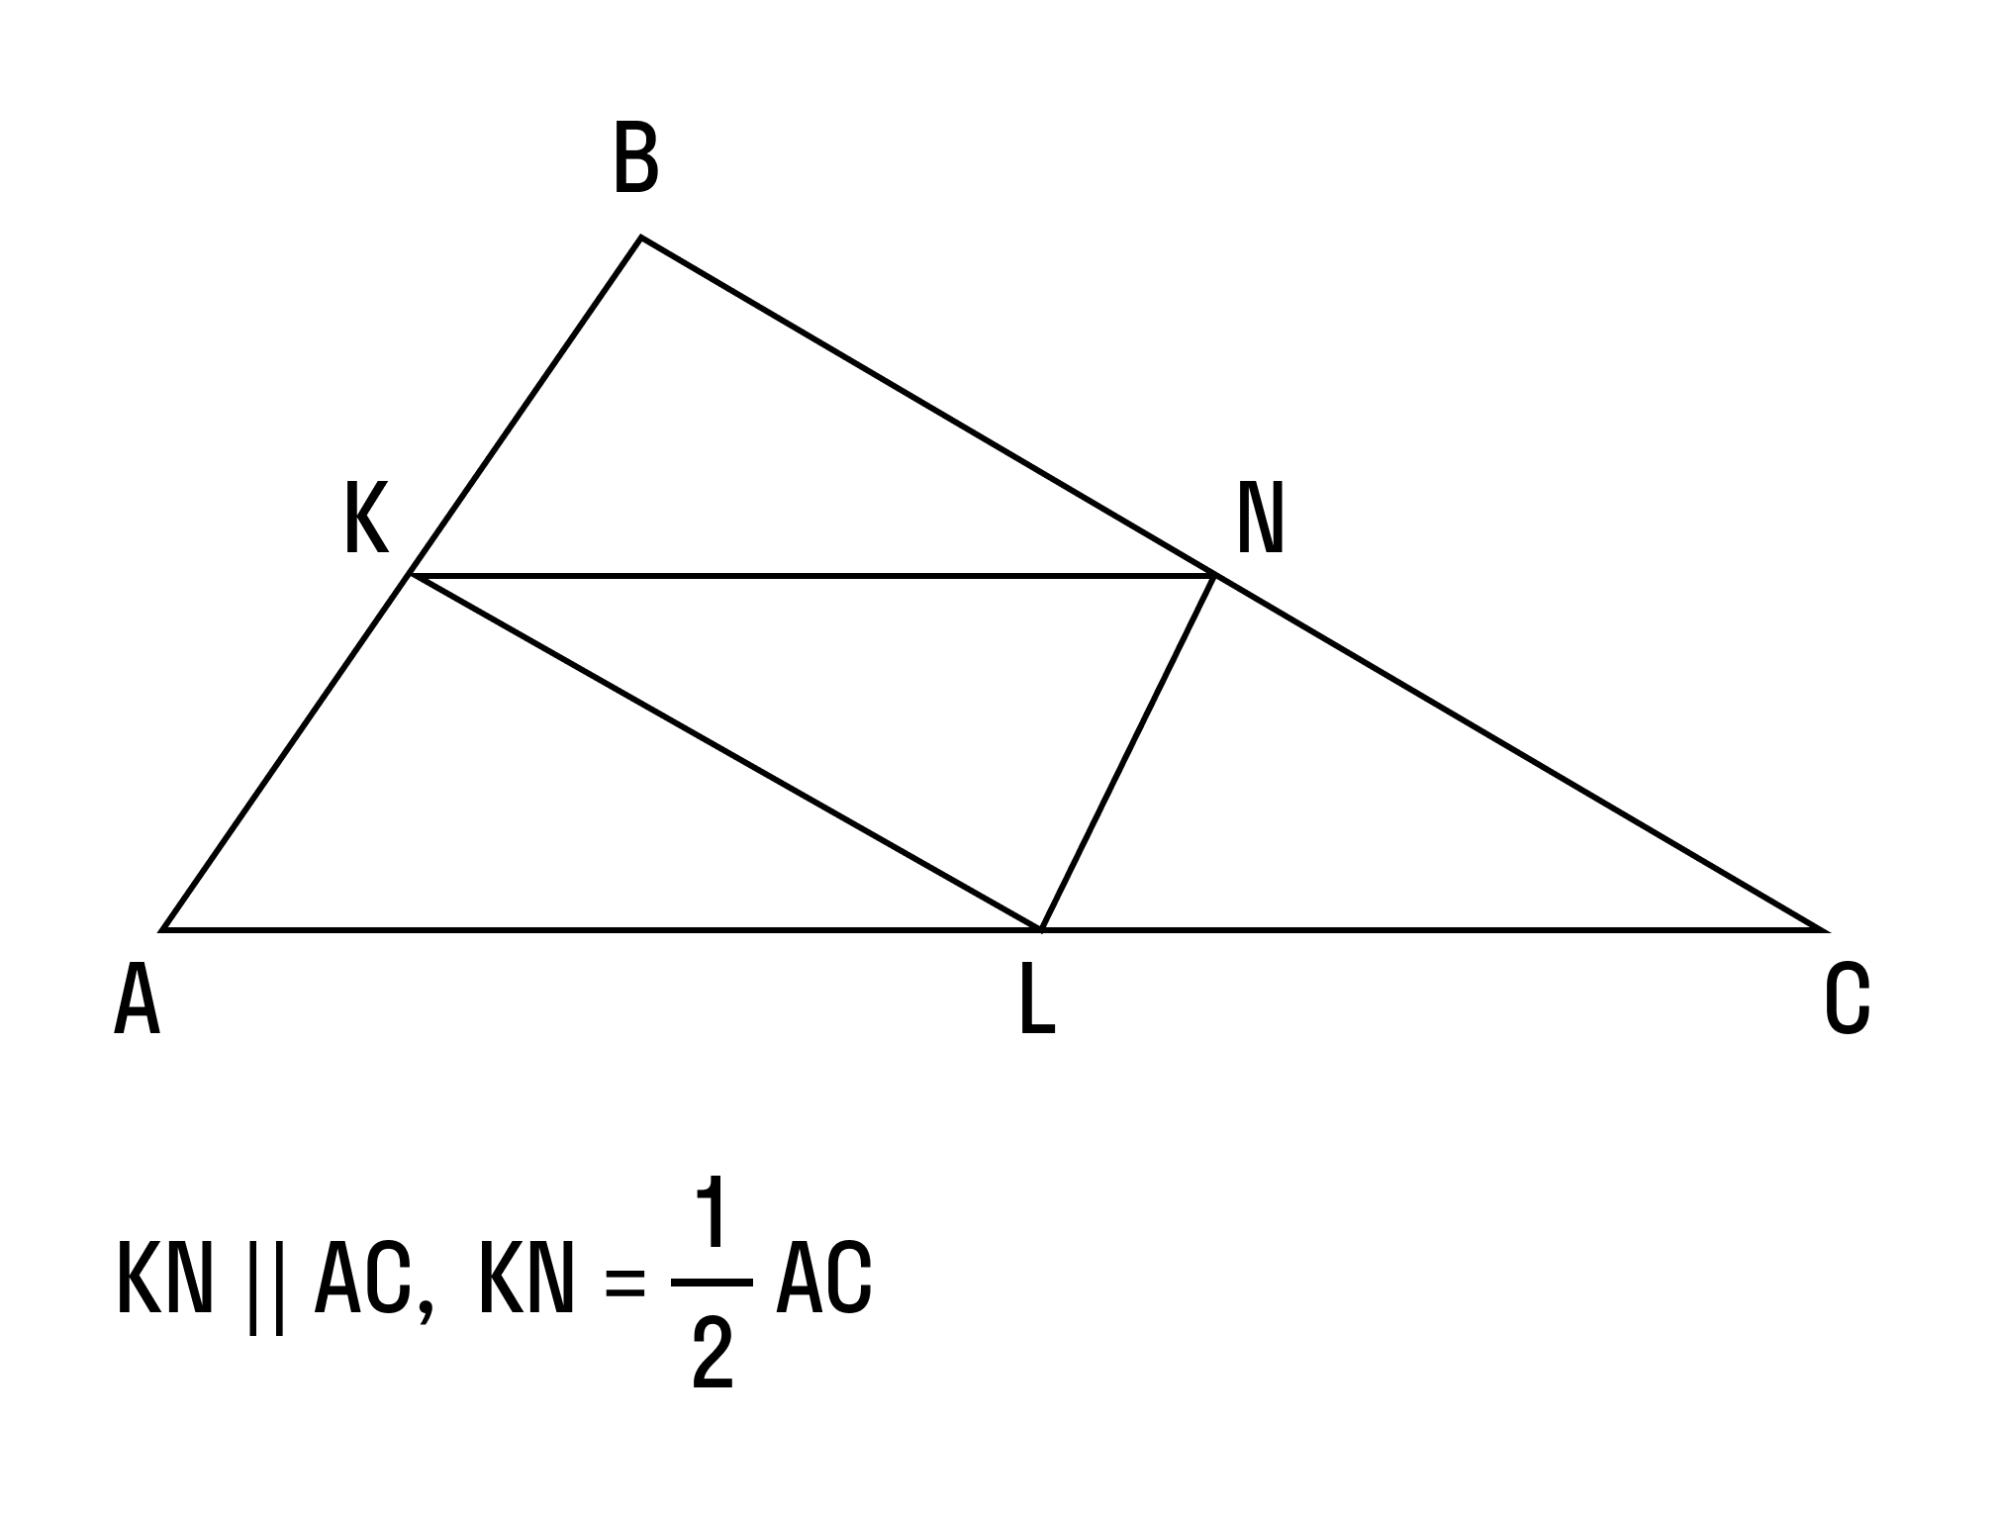 Отрезок de средняя линия треугольника abc изображенного на рисунке bc 40